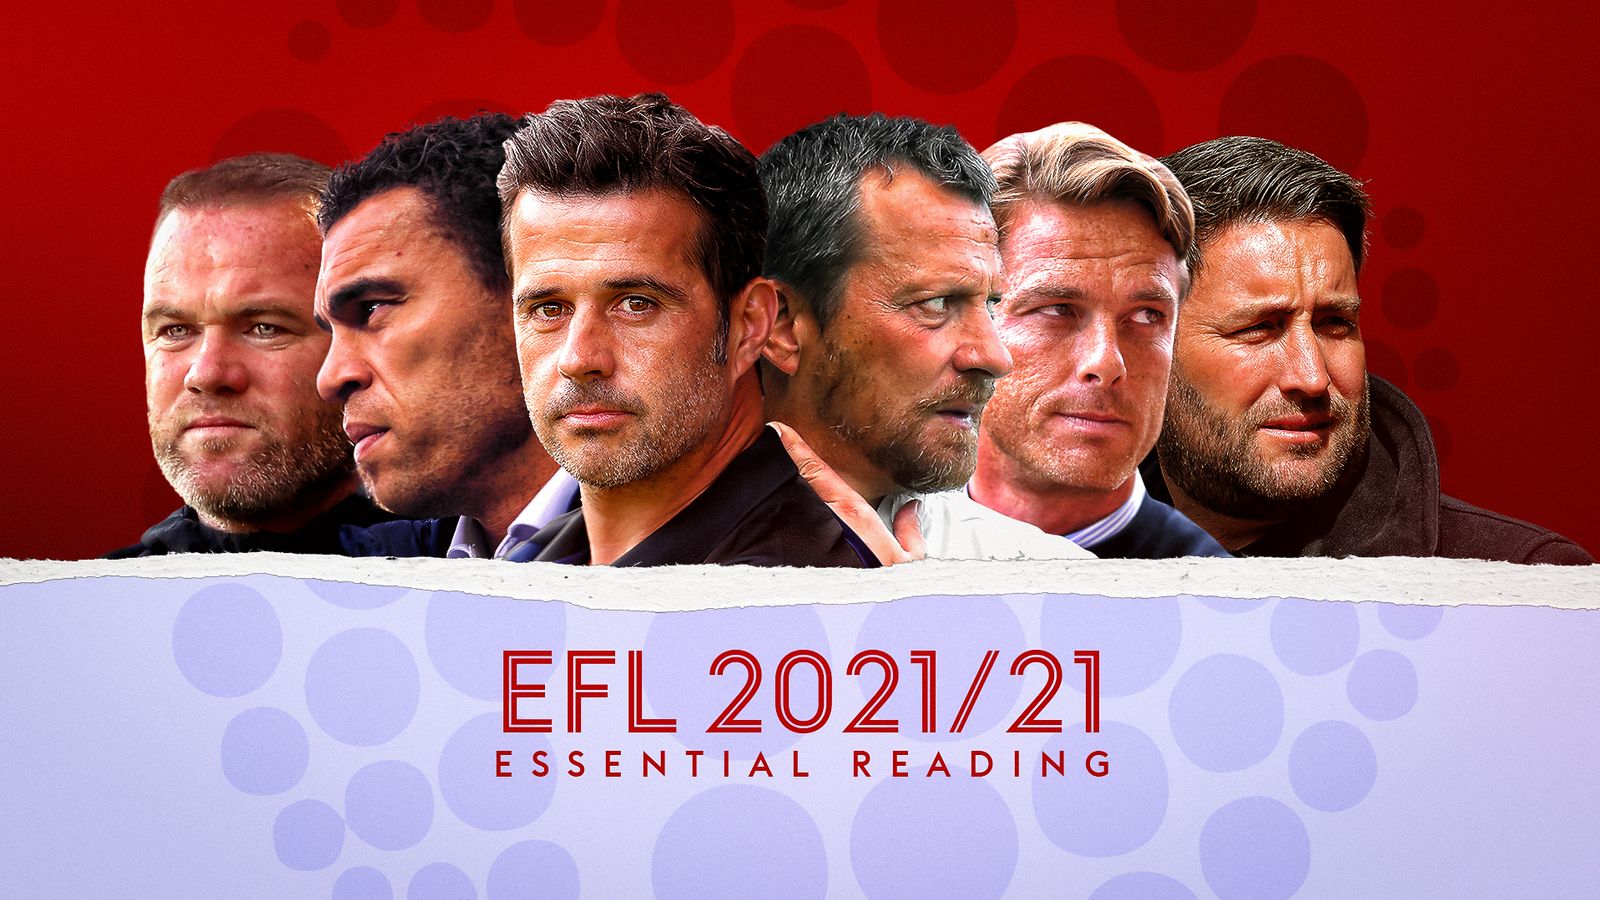 EFL 2021/22: Essential reading